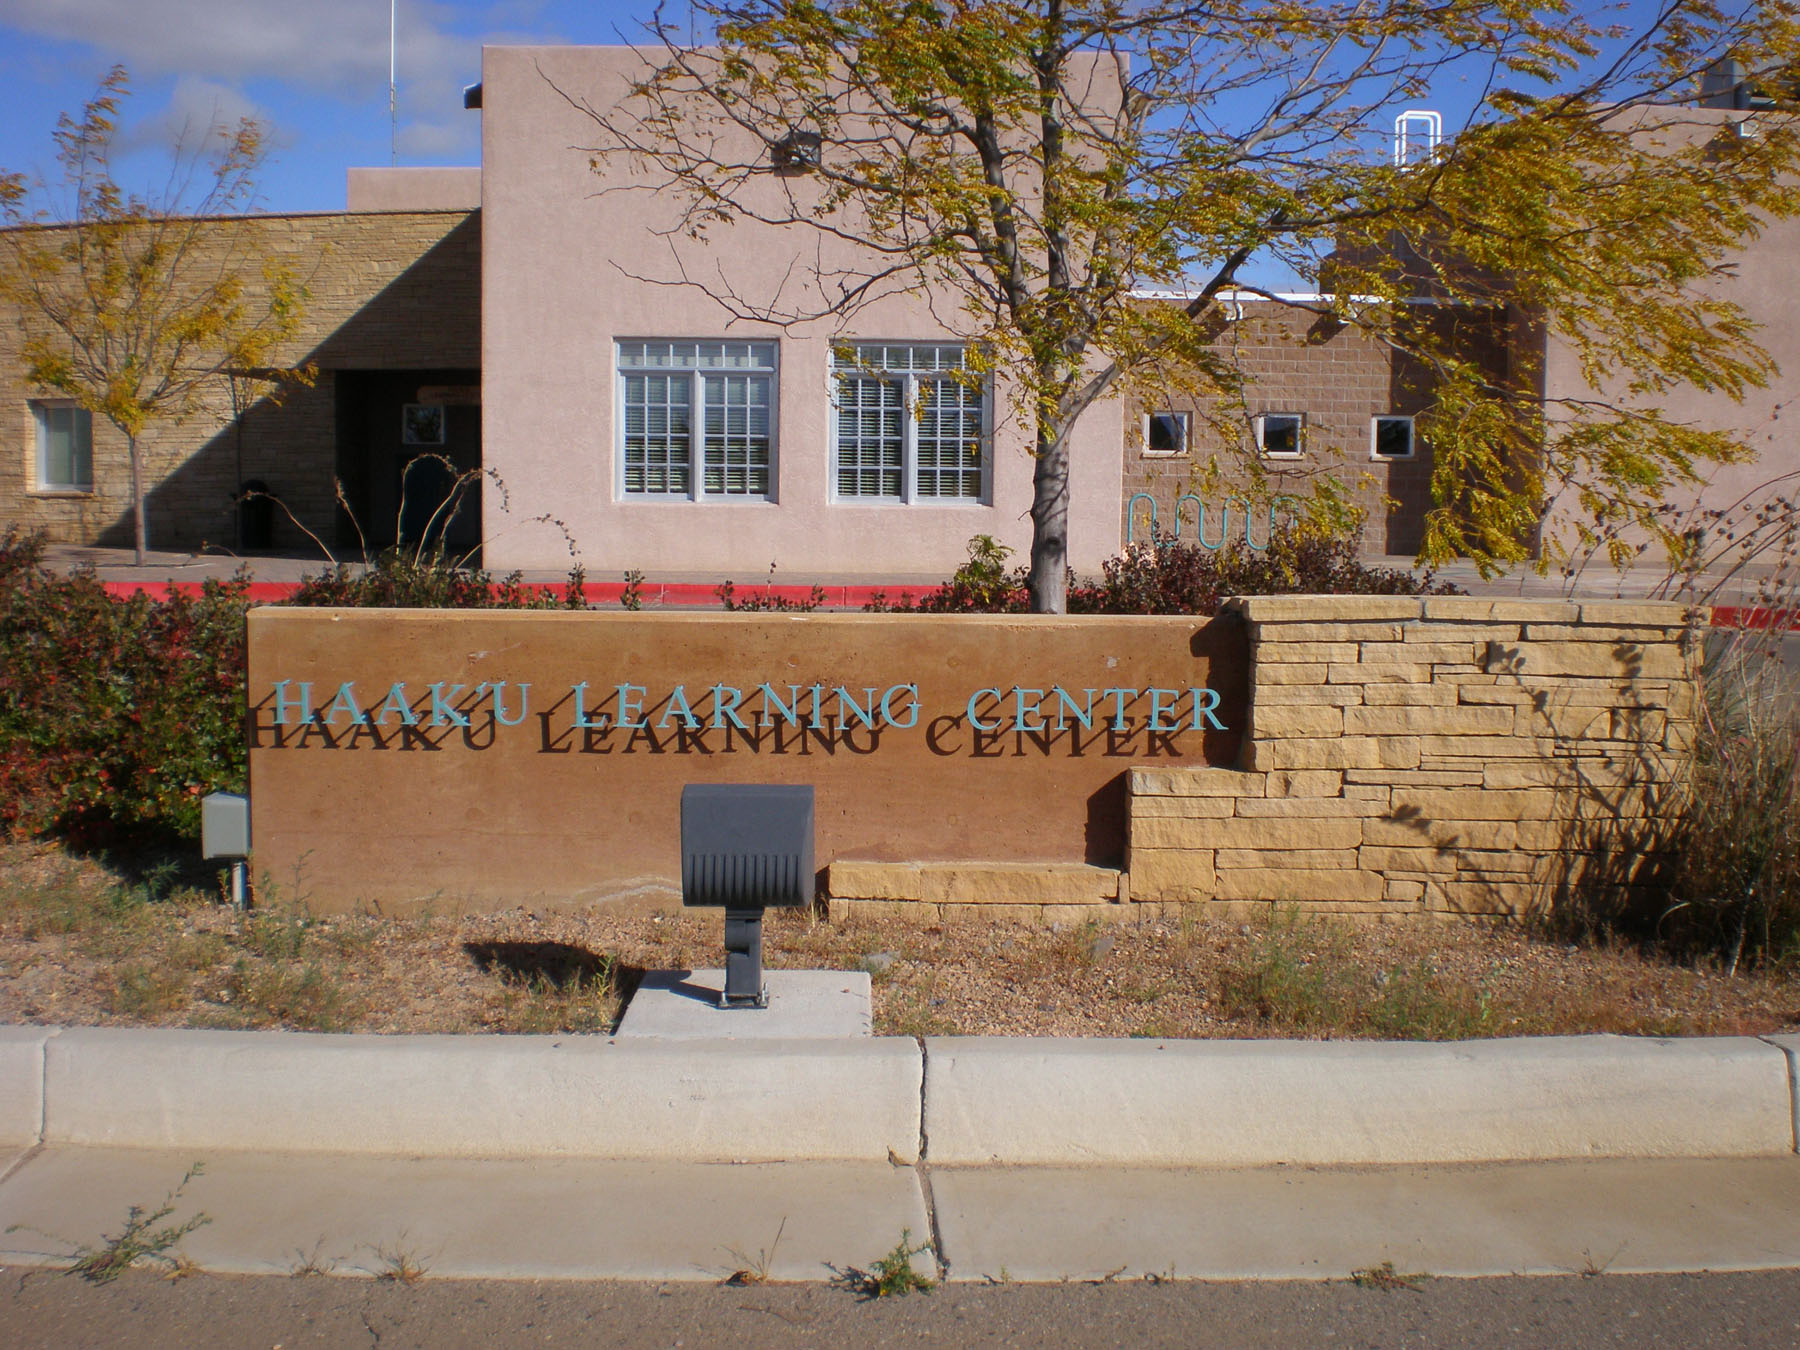 Haaku Learning Center